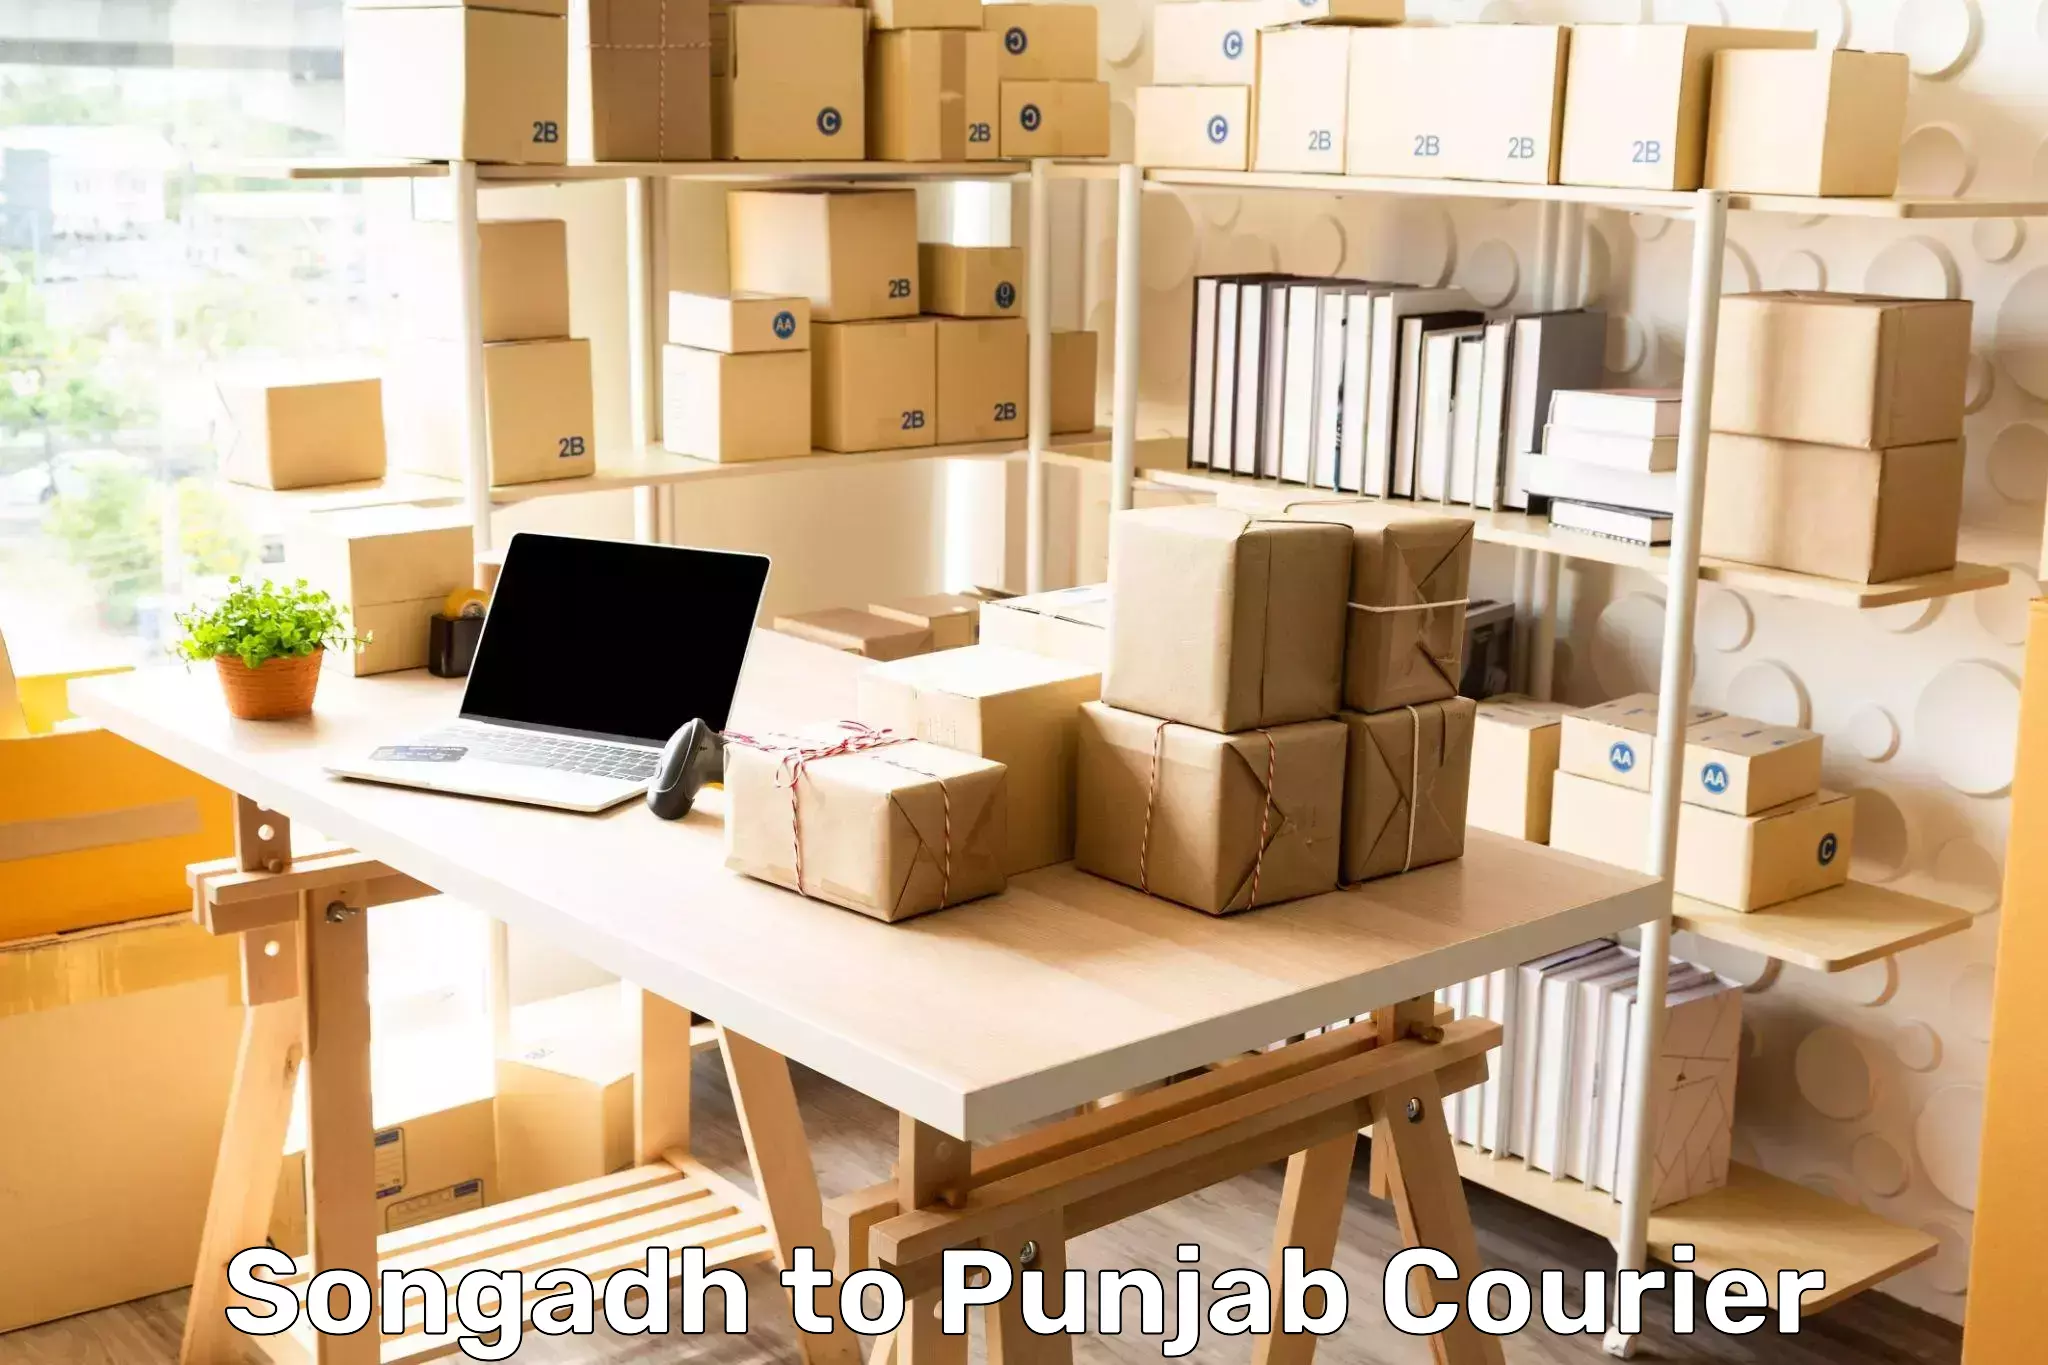 Bulk order courier Songadh to Punjab